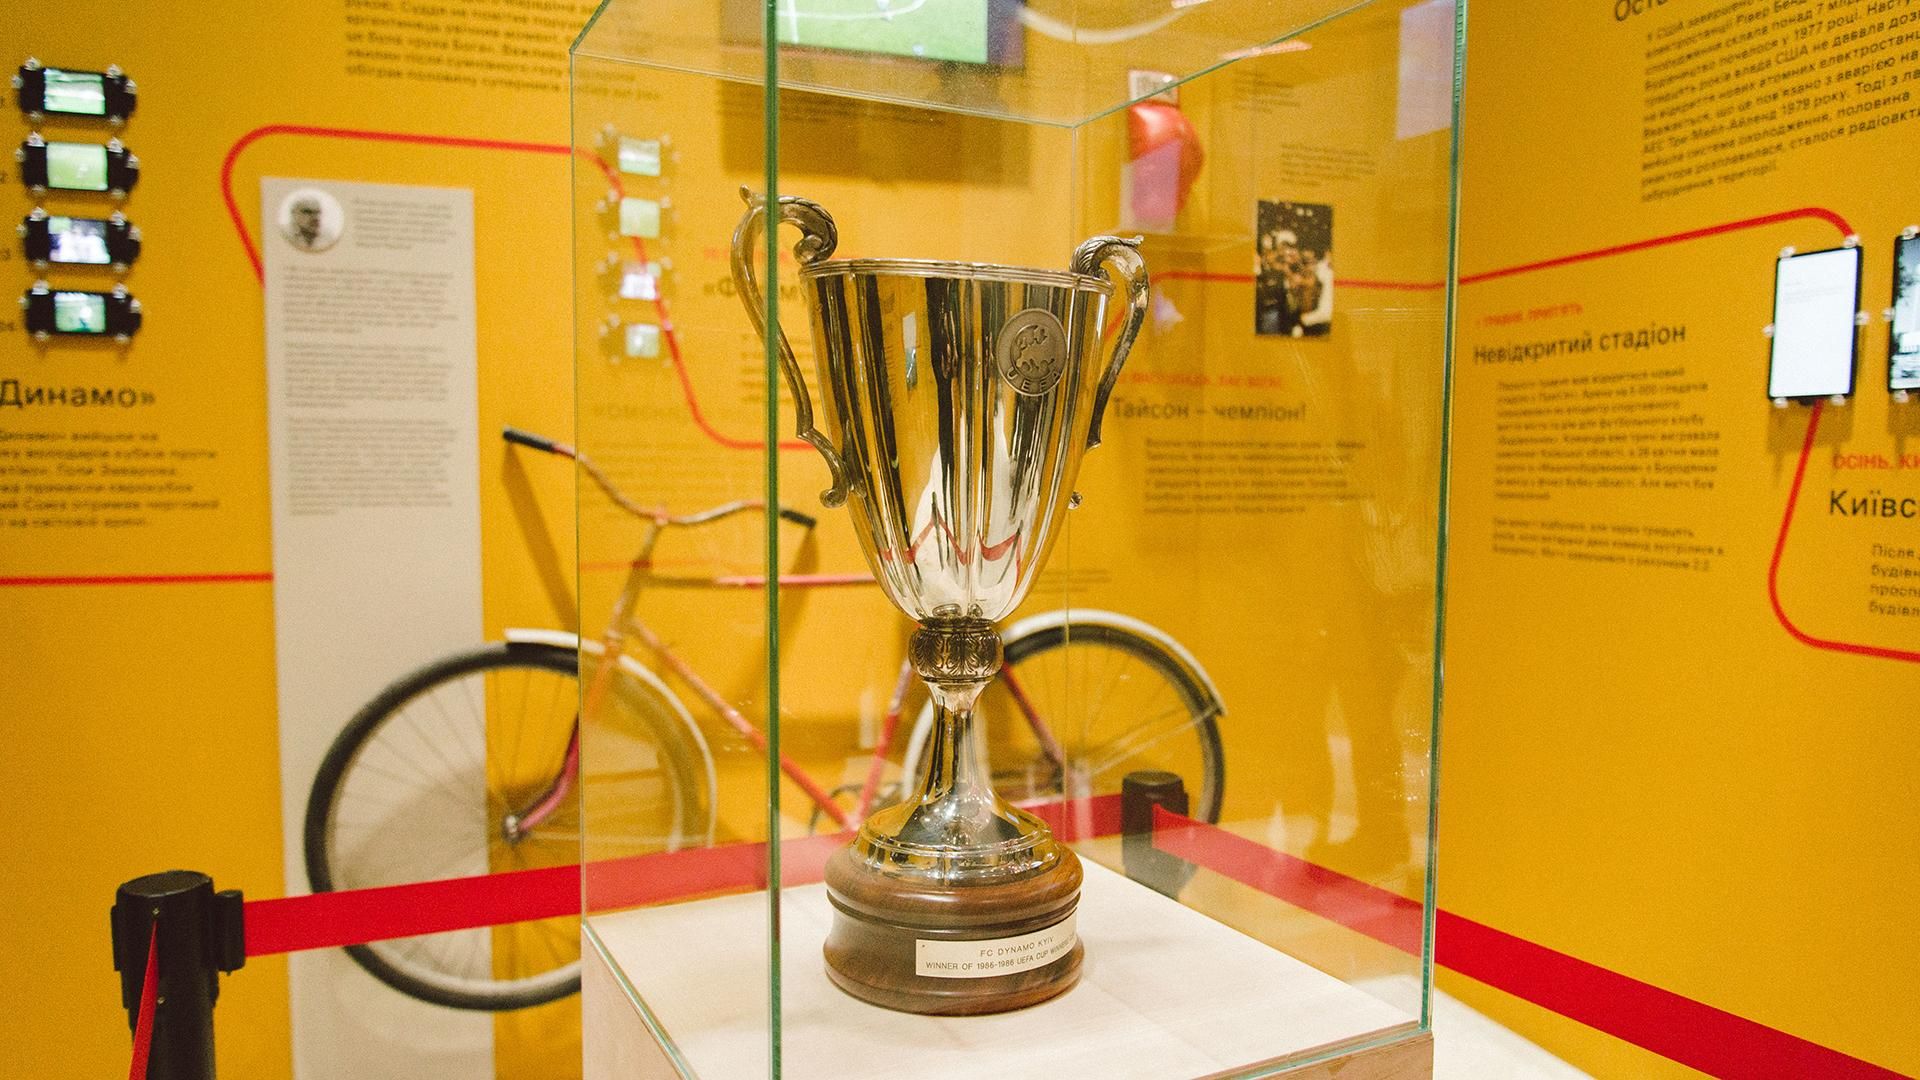 Кубок обладателей кубков УЕФА 1986 года выставили на выставке "Чернобыль. Путешествие" на ВДНХ